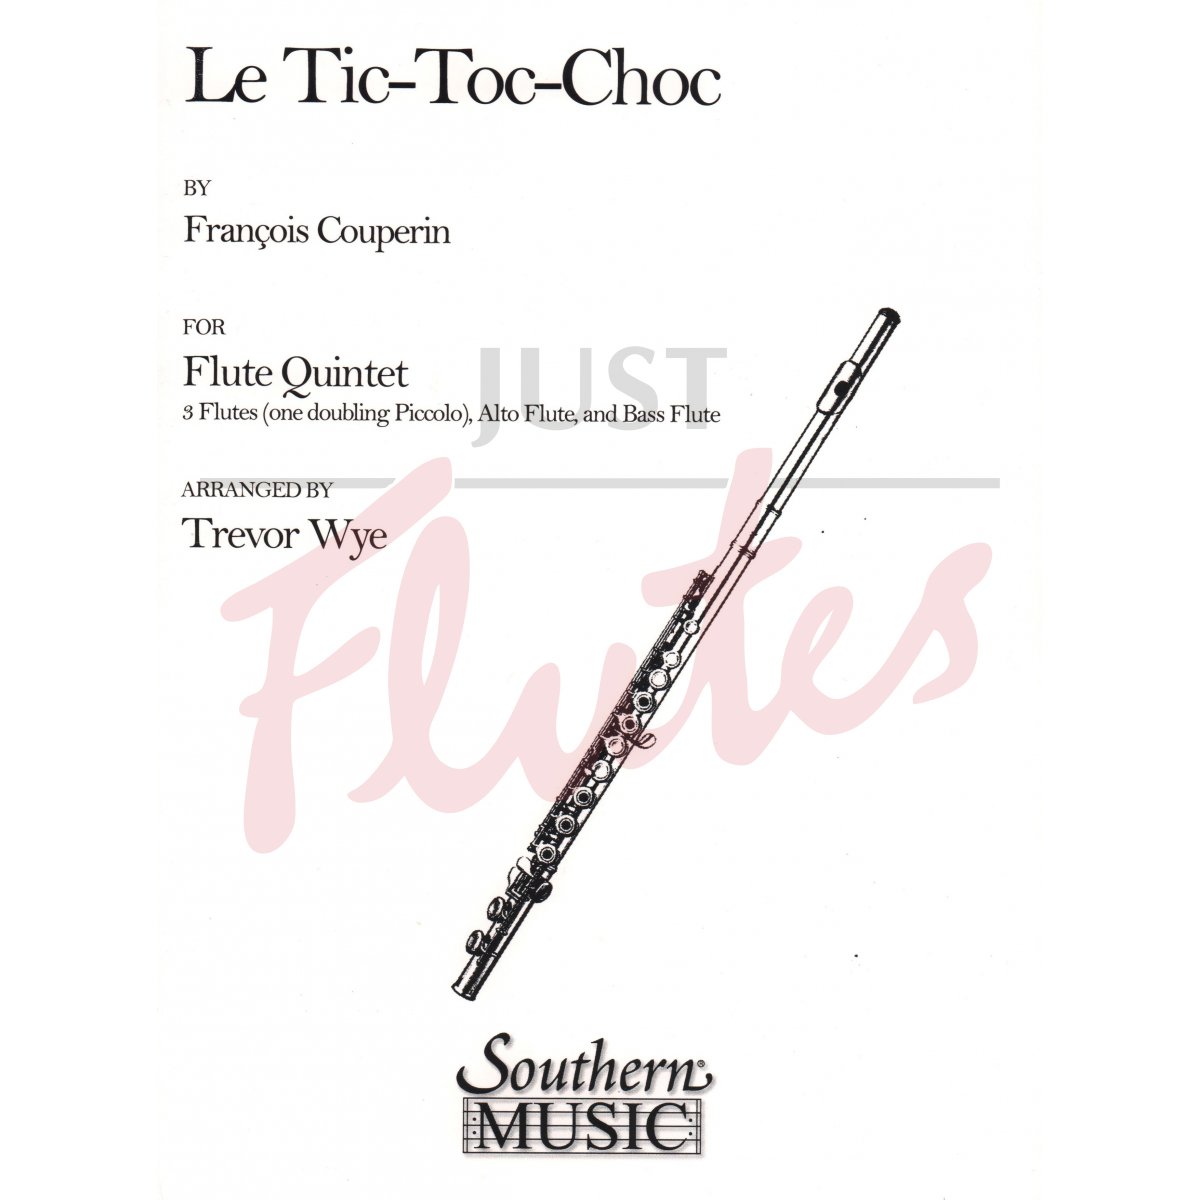 Le Tic-Toc-Choc for Flute Quintet